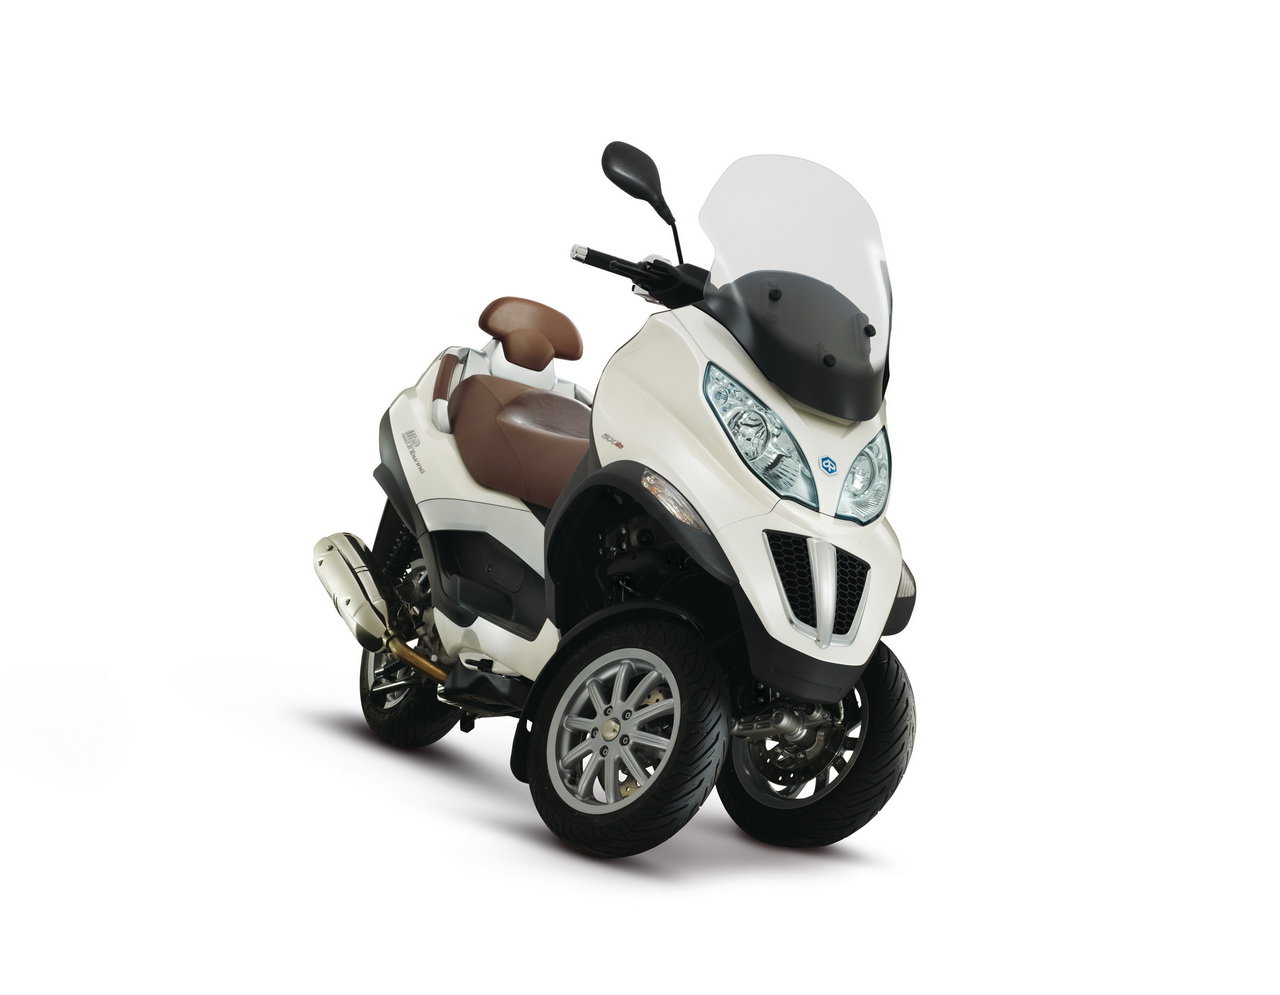 Listino Piaggio X 10 Executive 500 Scooter oltre 300 - image 15117_piaggio-mp3500-ie-business-lt on https://moto.motori.net